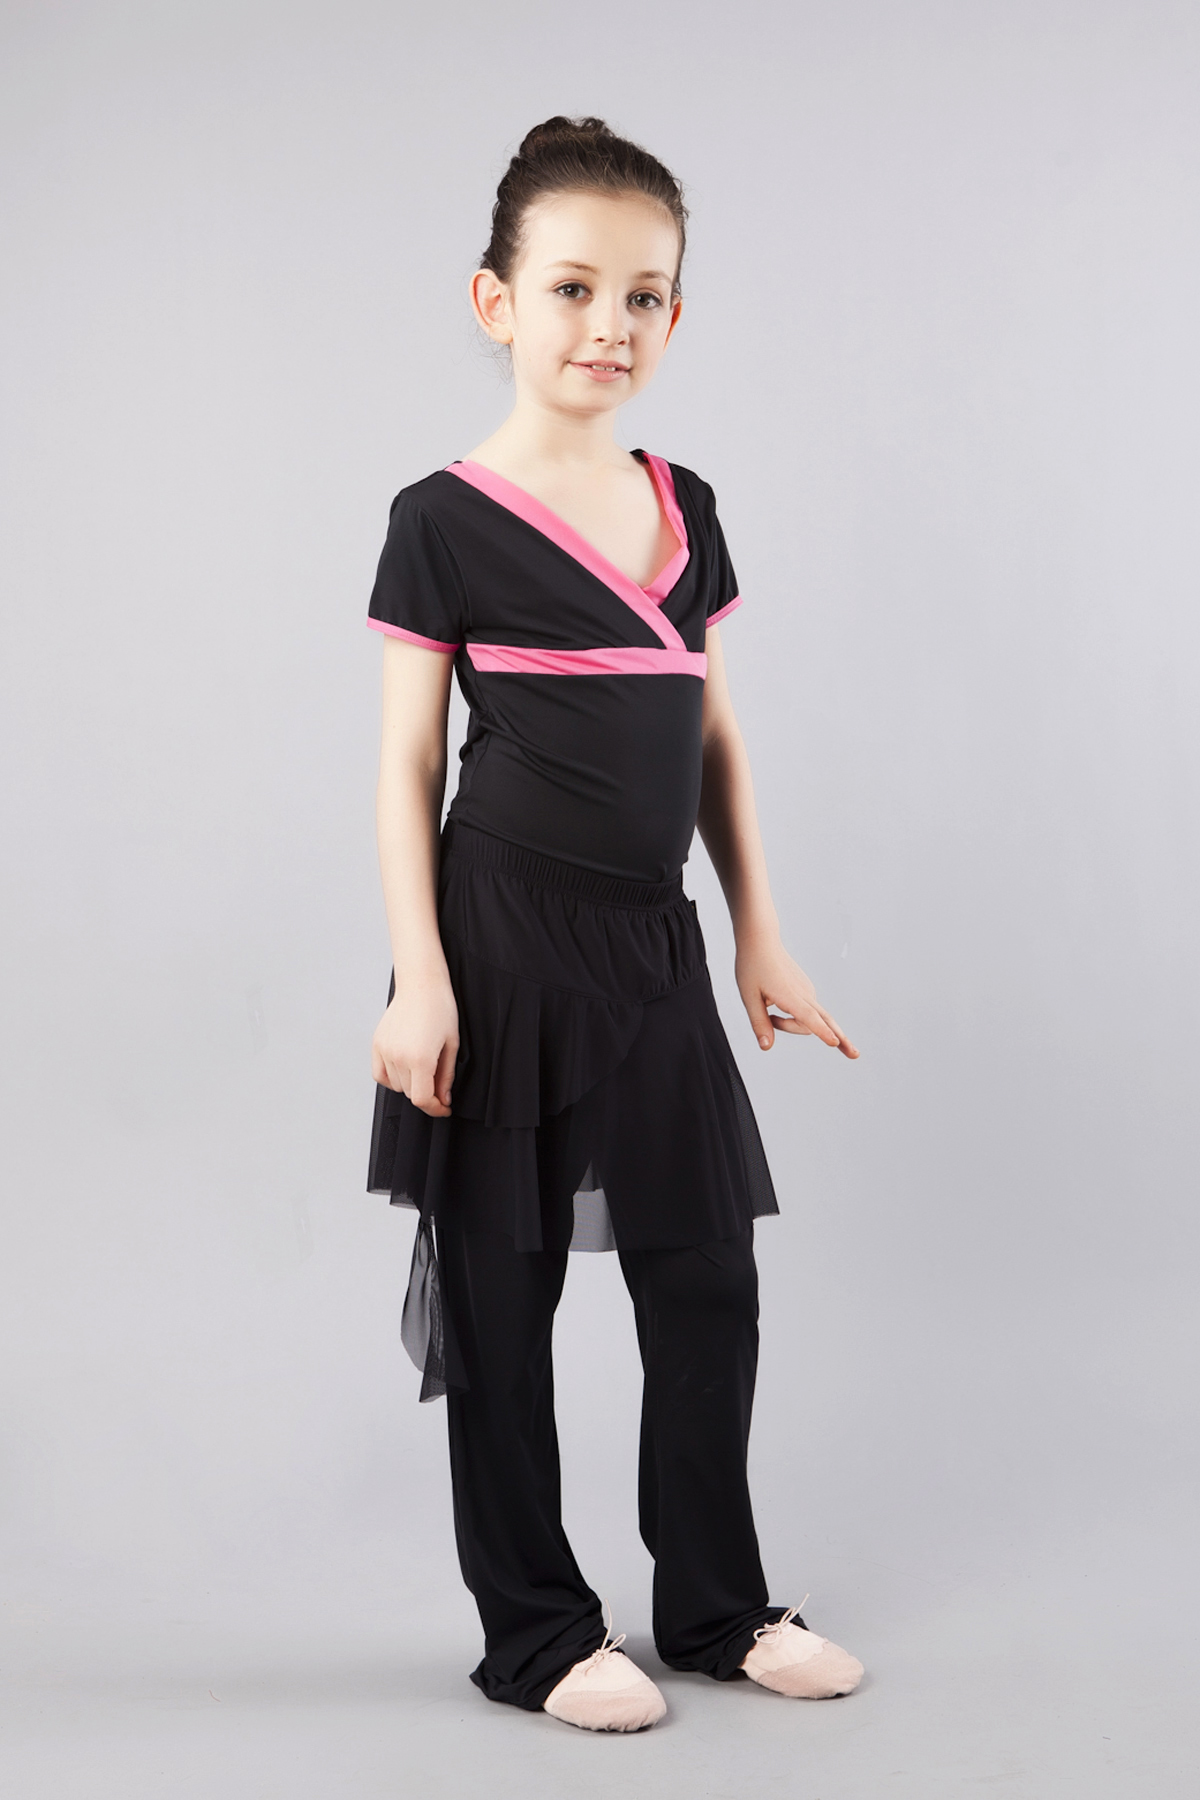 红舞鞋幼儿儿童拉丁舞套装拉丁舞蹈套装舞蹈服装舞蹈练习服可单买